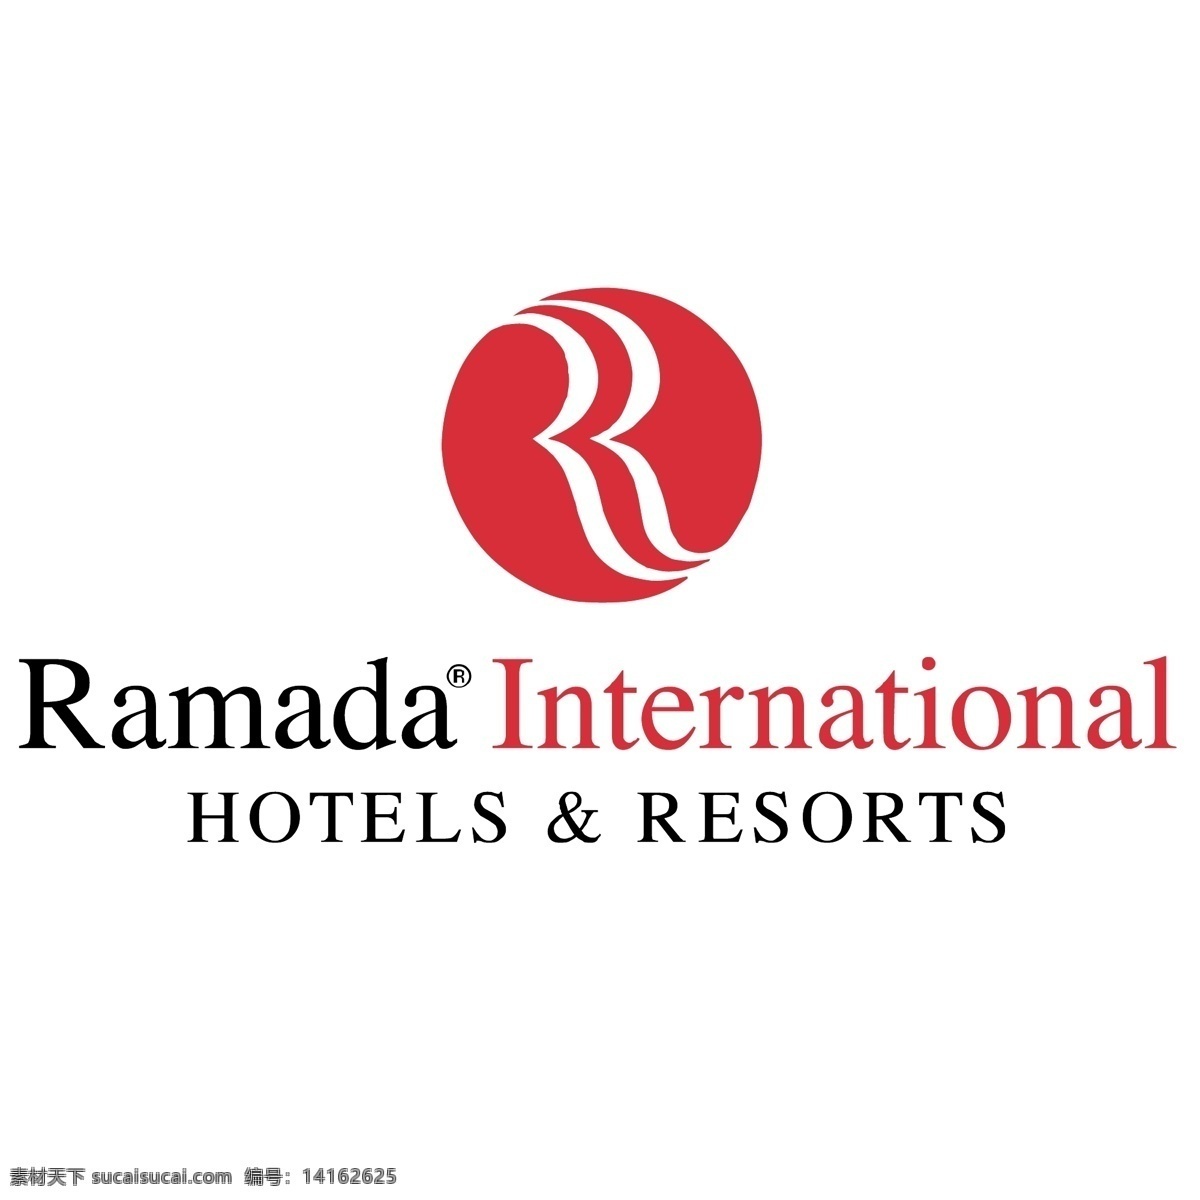 华美达 国际酒店 免费 psd源文件 logo设计